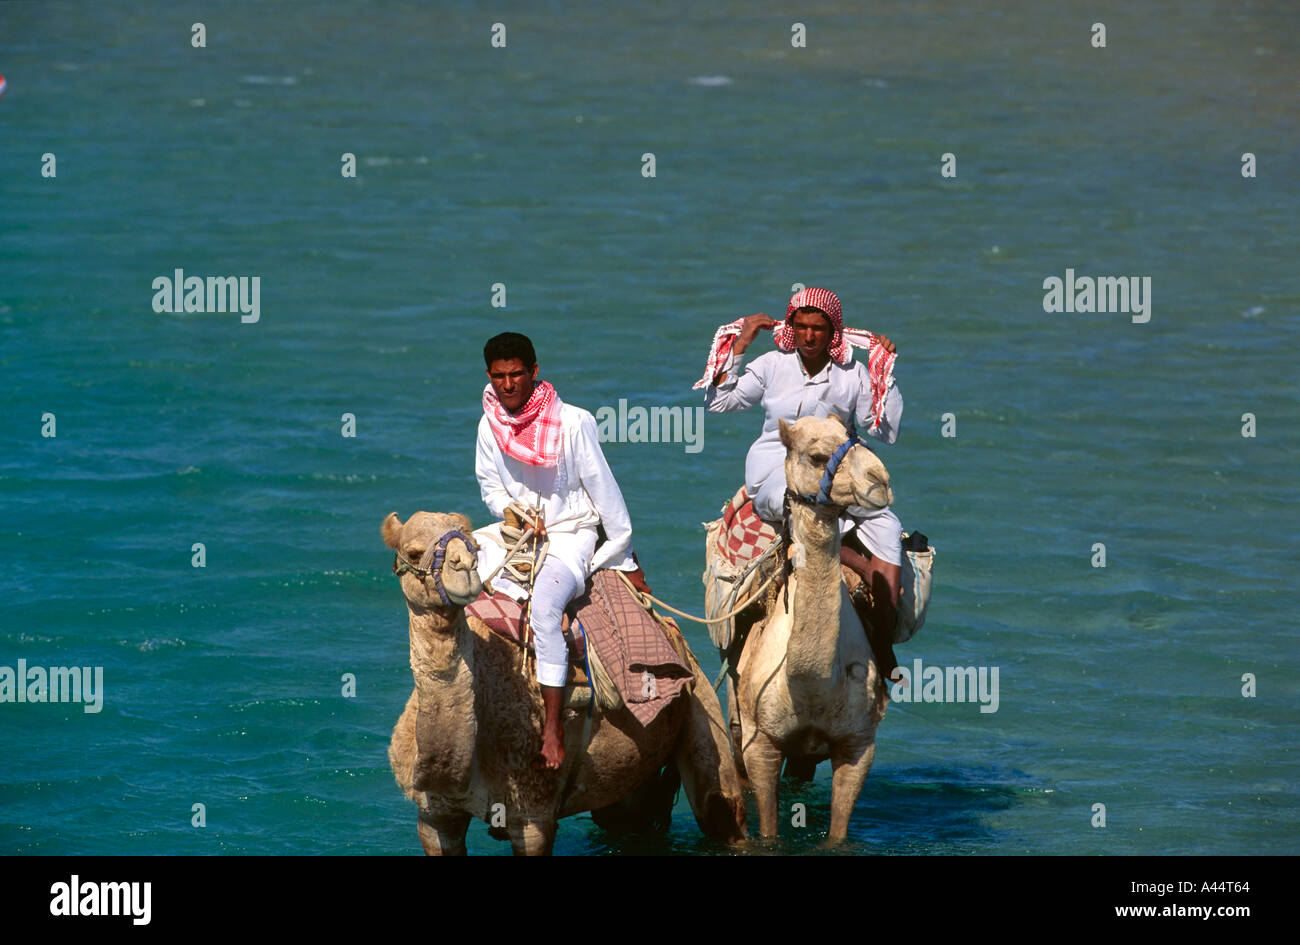 Les cavaliers bédouins sur deux chameaux debout dans l'eau peu profonde de la Mer Rouge à Dahab Sinai Egypte Banque D'Images